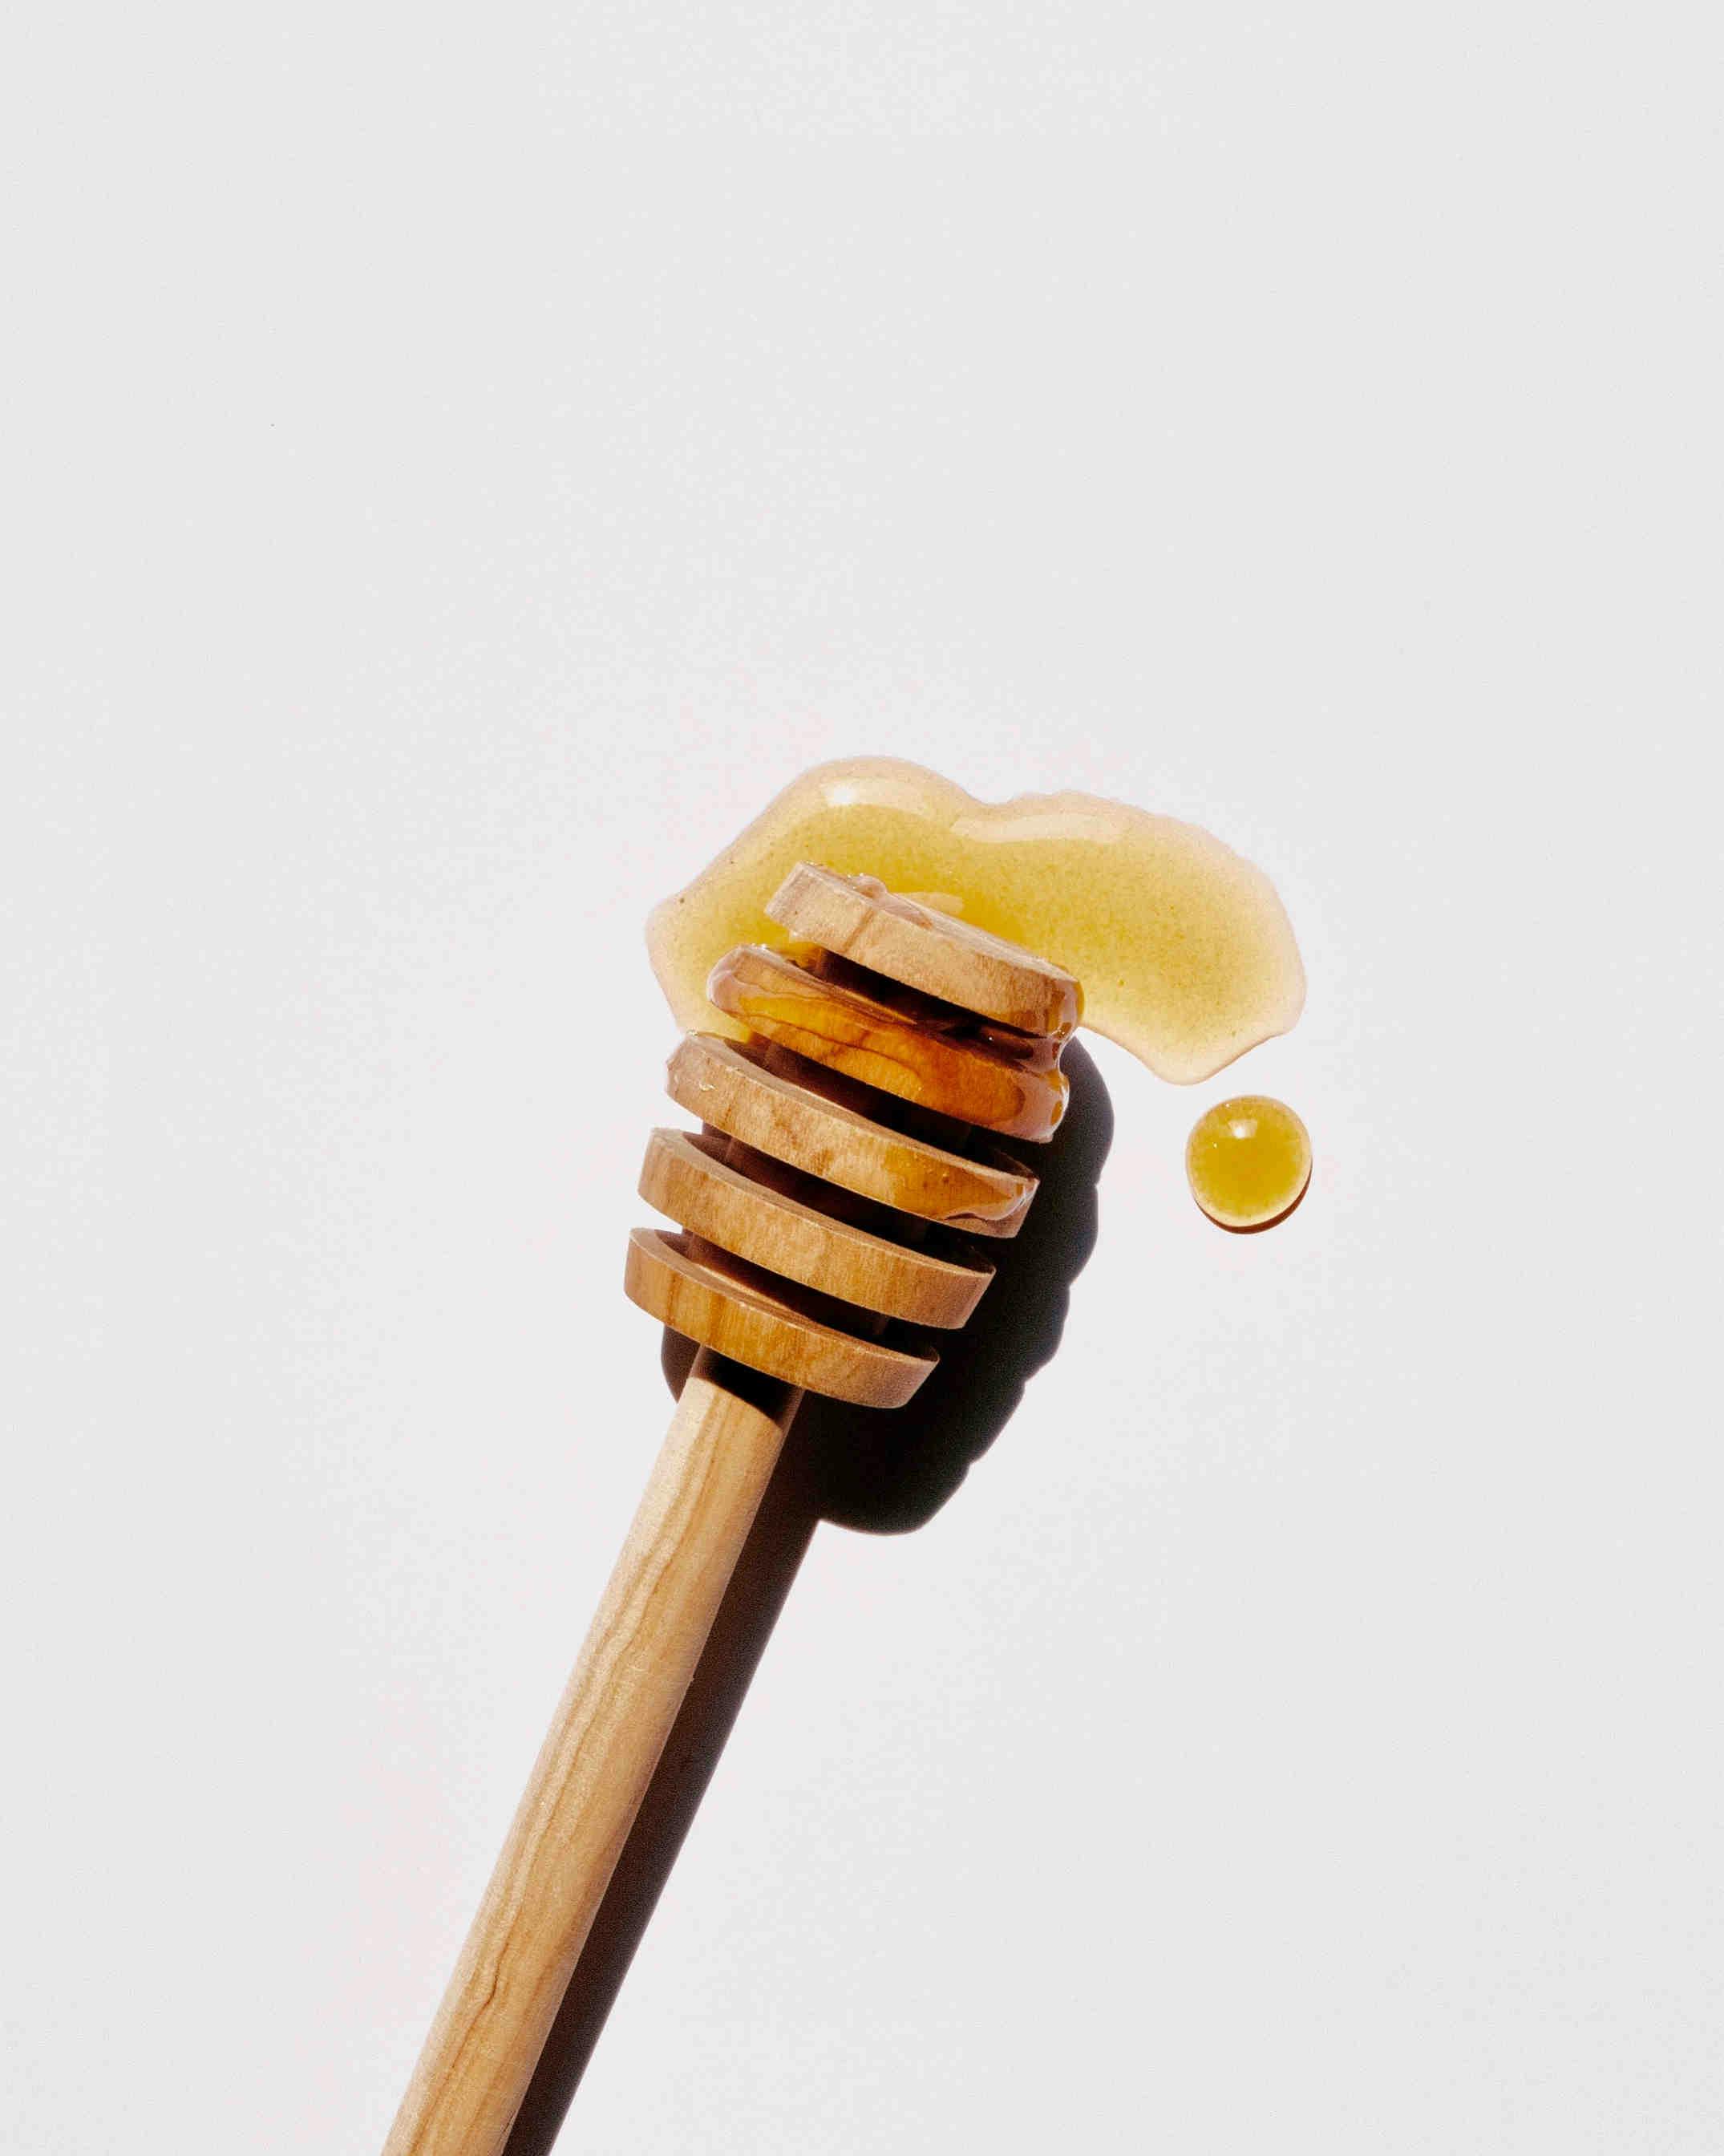 Il miele di Barena: perché è così particolare?